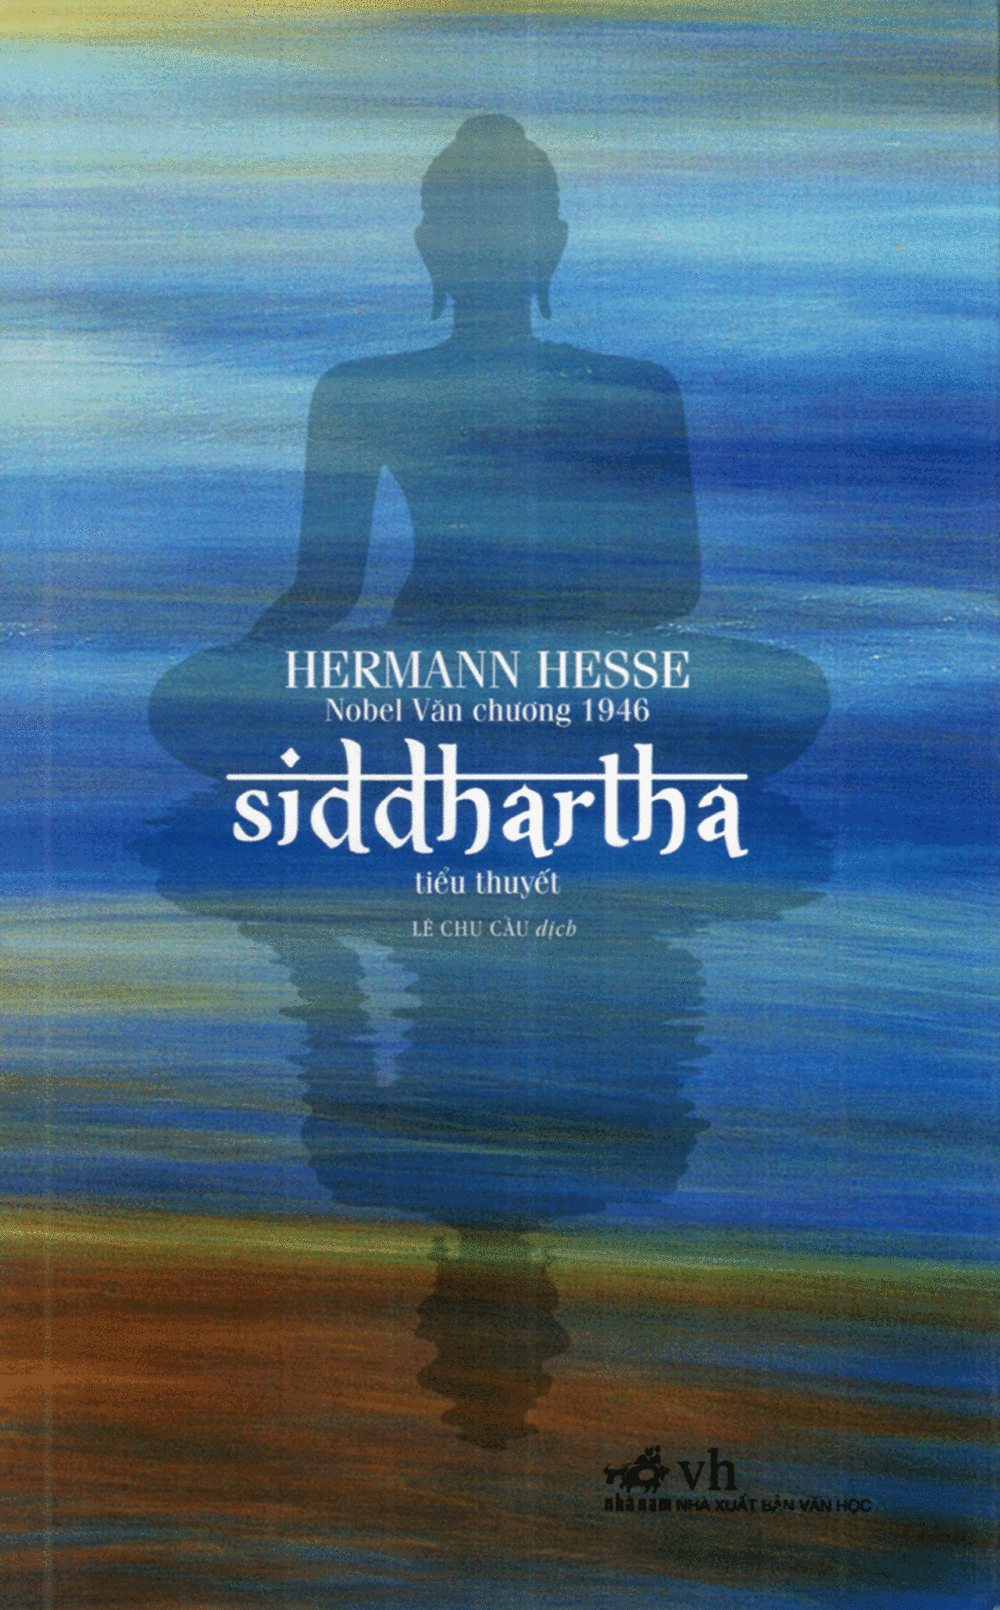 hinh anh bia sach siddhartha e1608305413989 - Siddhartha: Bài ca muôn điệu về cuộc hạnh ngộ đẹp đẽ